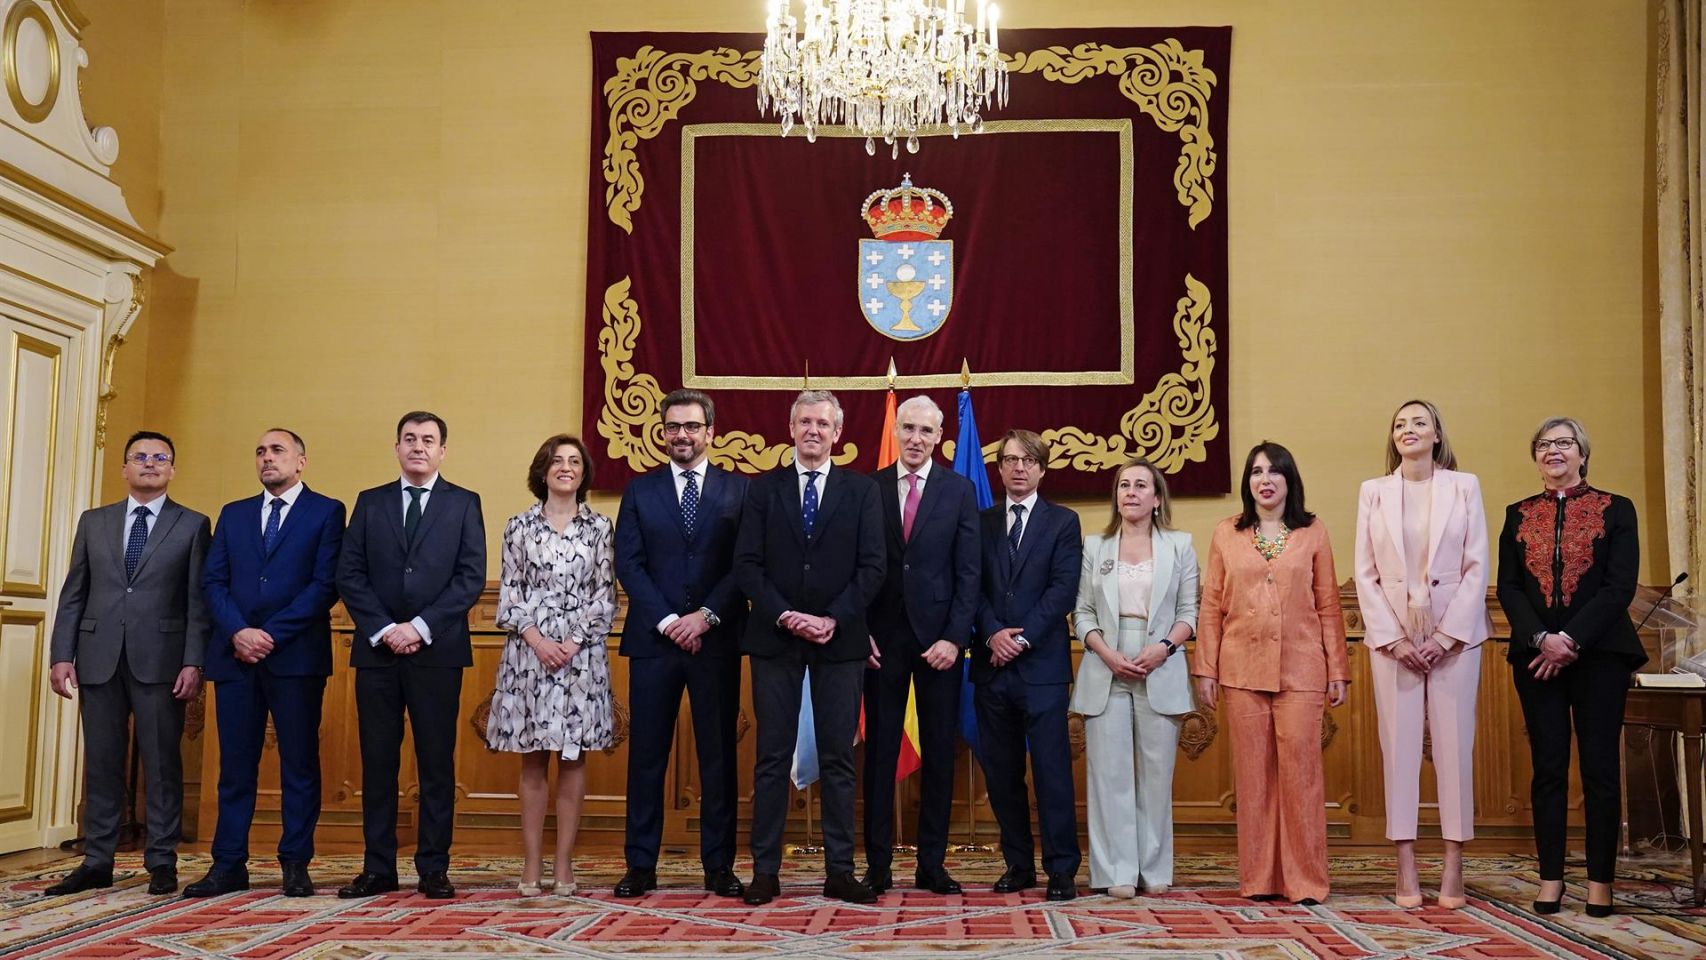 Los nuevos conselleiros de la Xunta de Galicia, posan tras la toma de su posesión, en el Pazo de Raxoi.